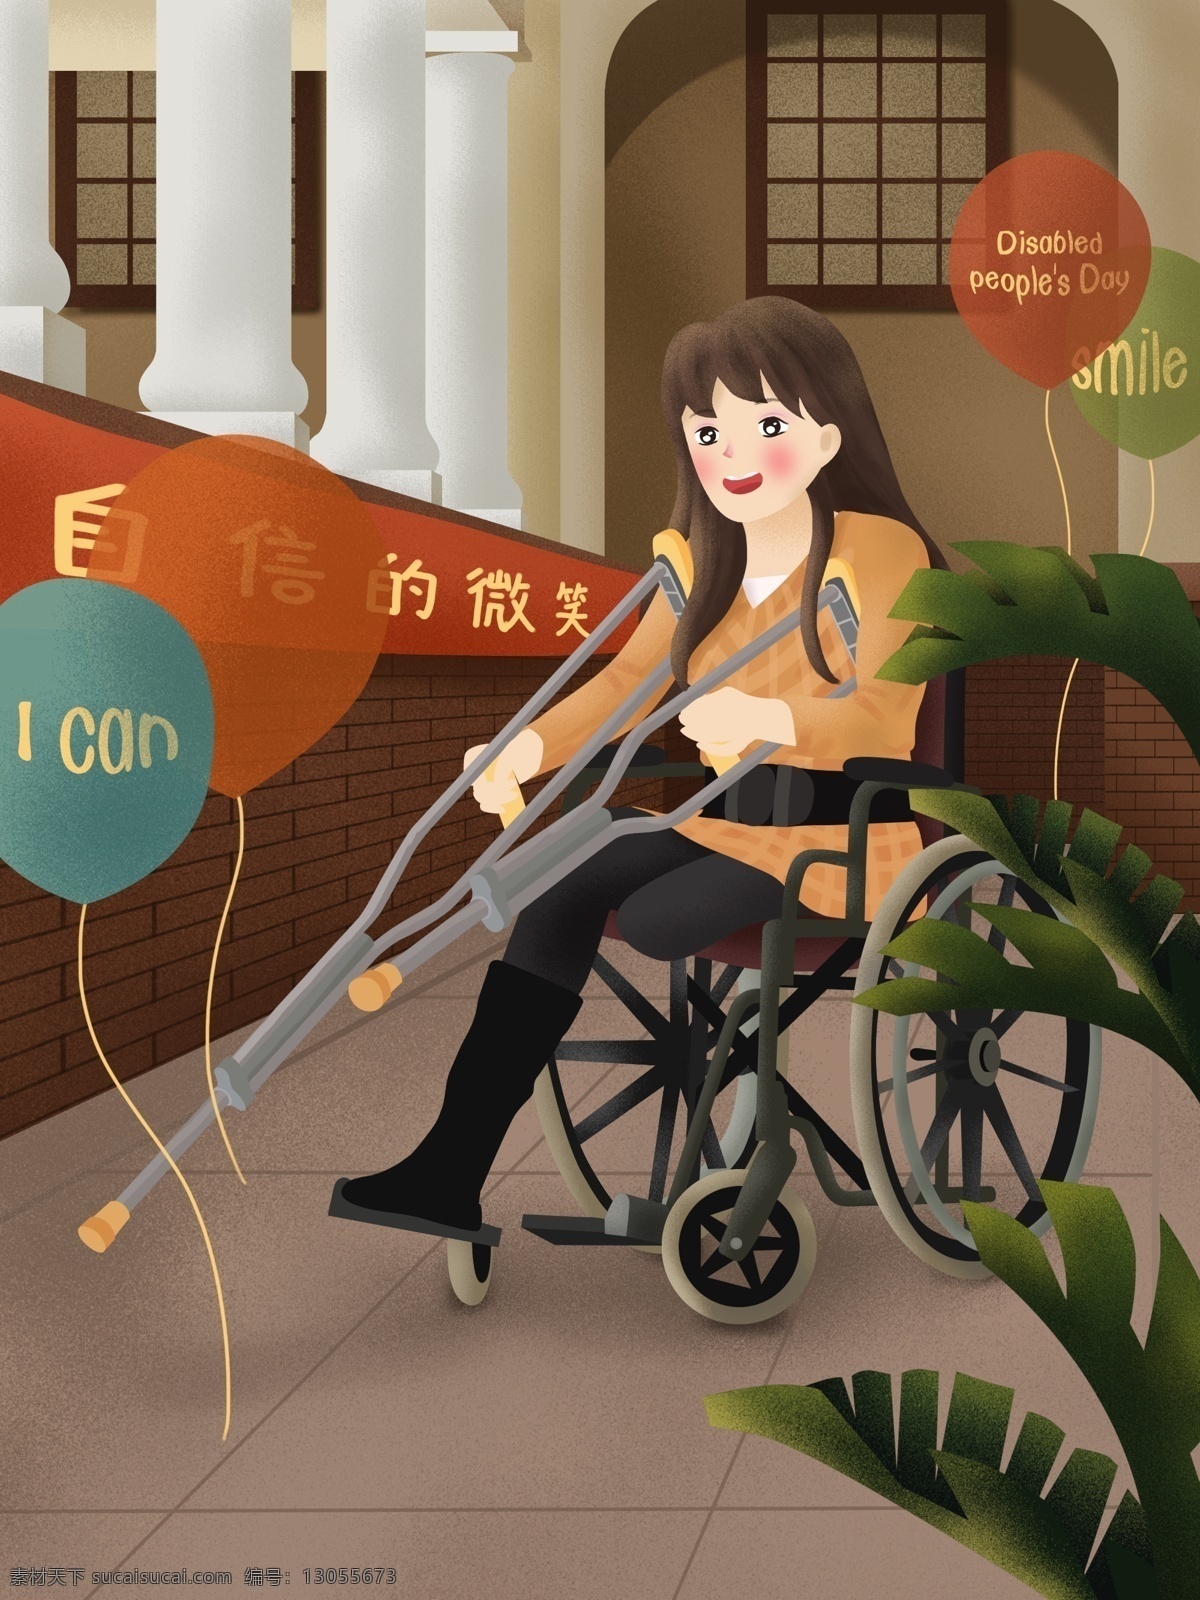 原创 手绘 插画 国际 残疾 人日 自信 微笑 残疾人 女孩 走廊 手绘插画 节日 国际残疾人日 轮椅 拐杖